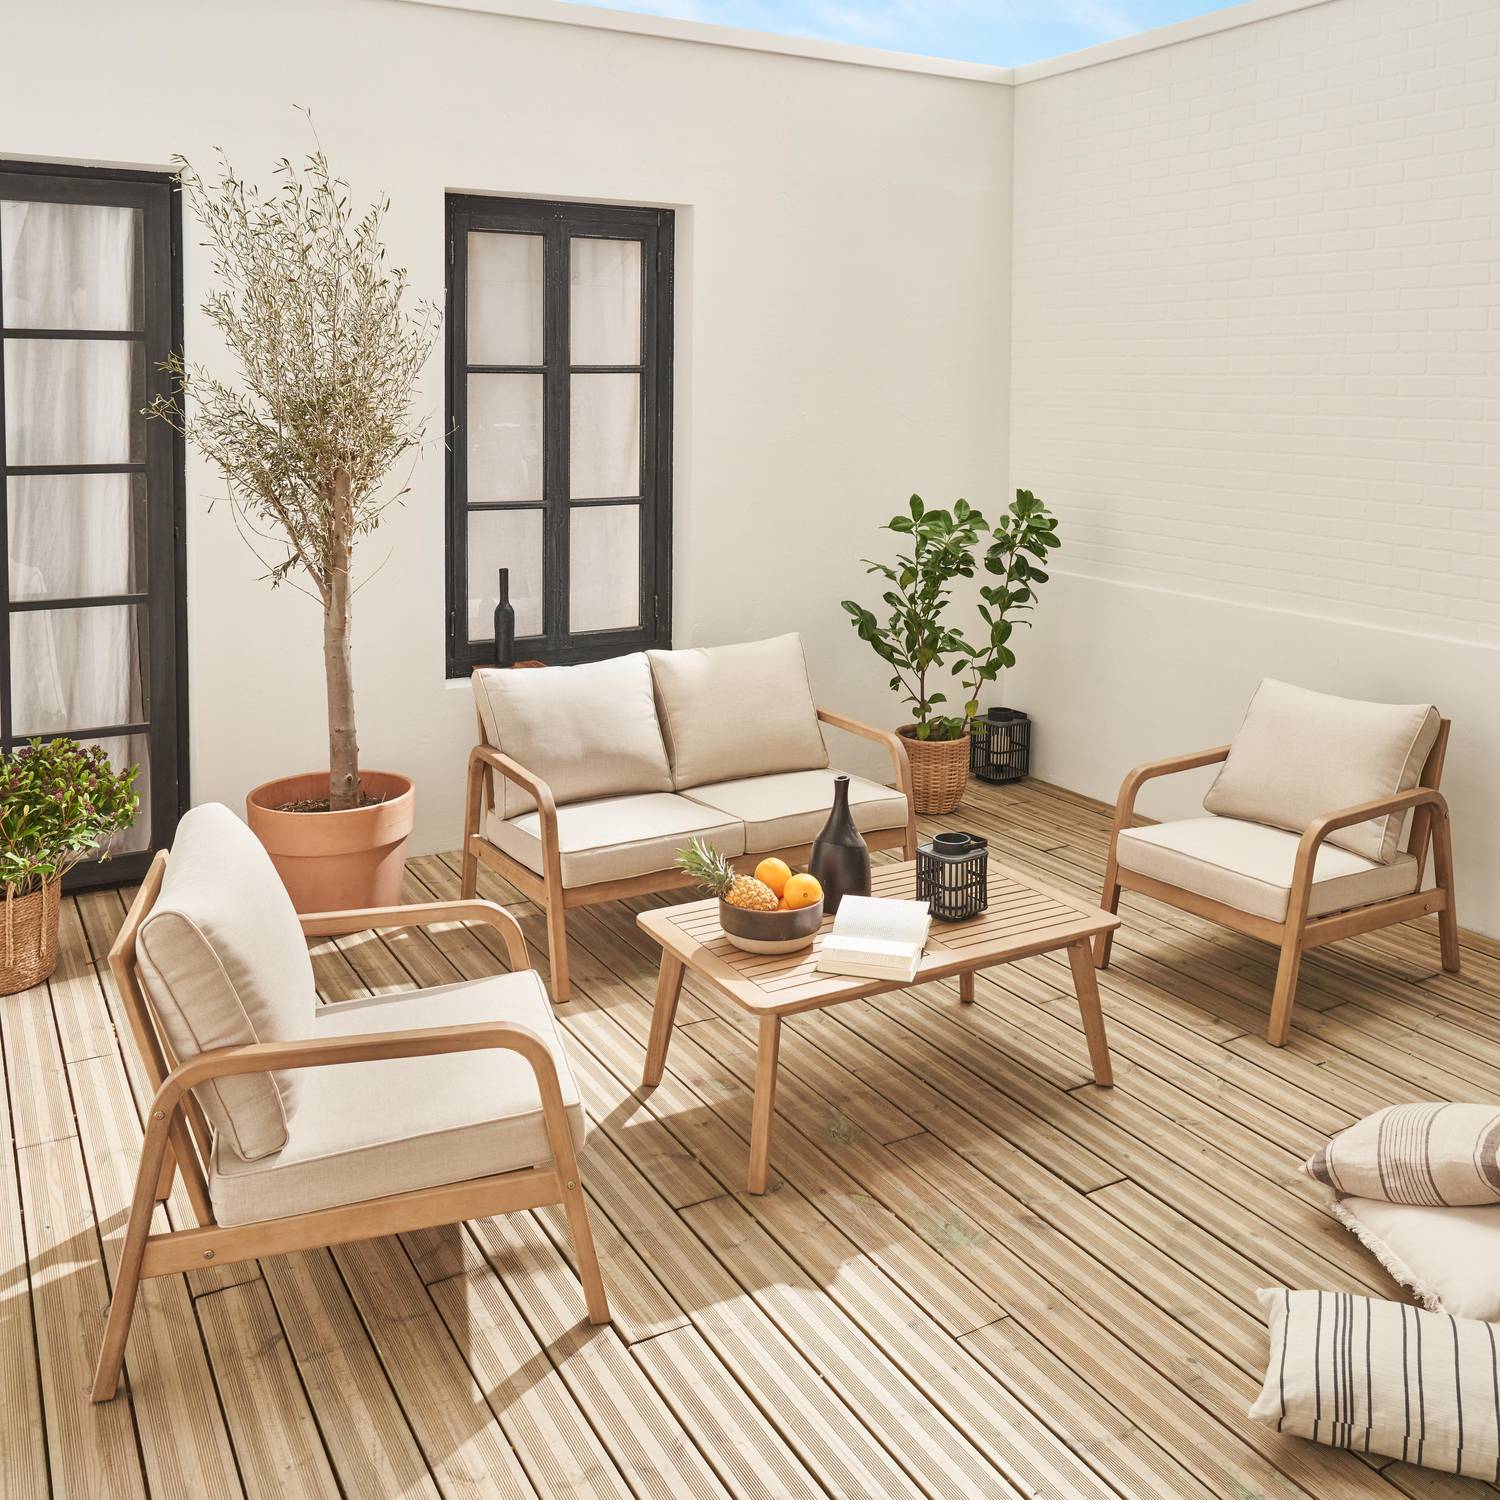 Gartenmöbelset aus FSC-Akazienholz 4 Personen beige, abnehmbare Bezüge, 2 Sessel, 1 2-Sitzer-Sofa und 1 Tisch -  Carnota Photo1